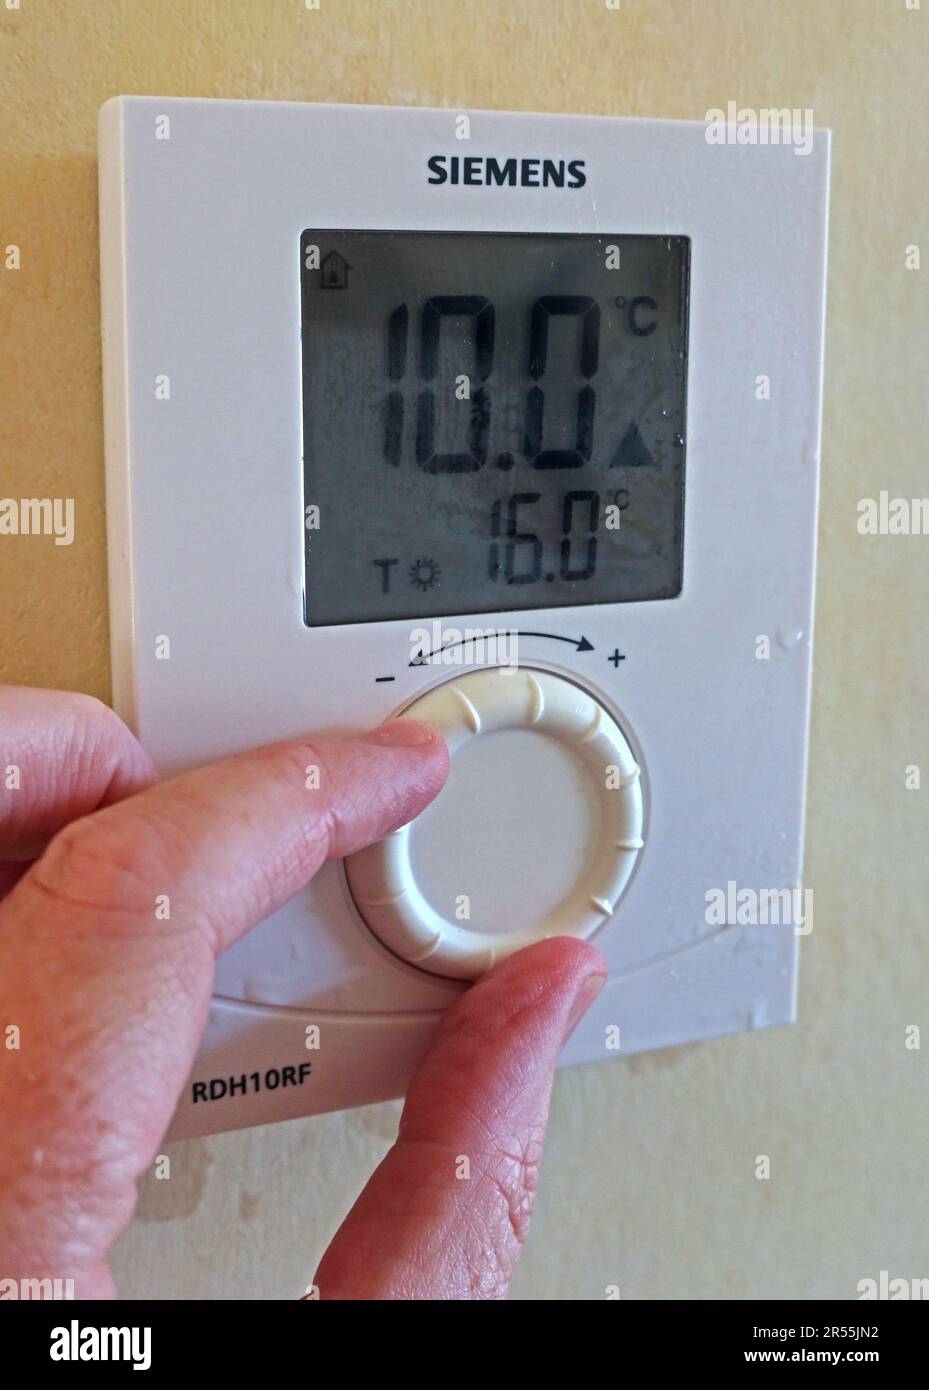 Réglage d'un thermostat par temps froid (10deg) pour activer le chauffage, à l'aide d'une commande murale Siemens RDH10RF Banque D'Images